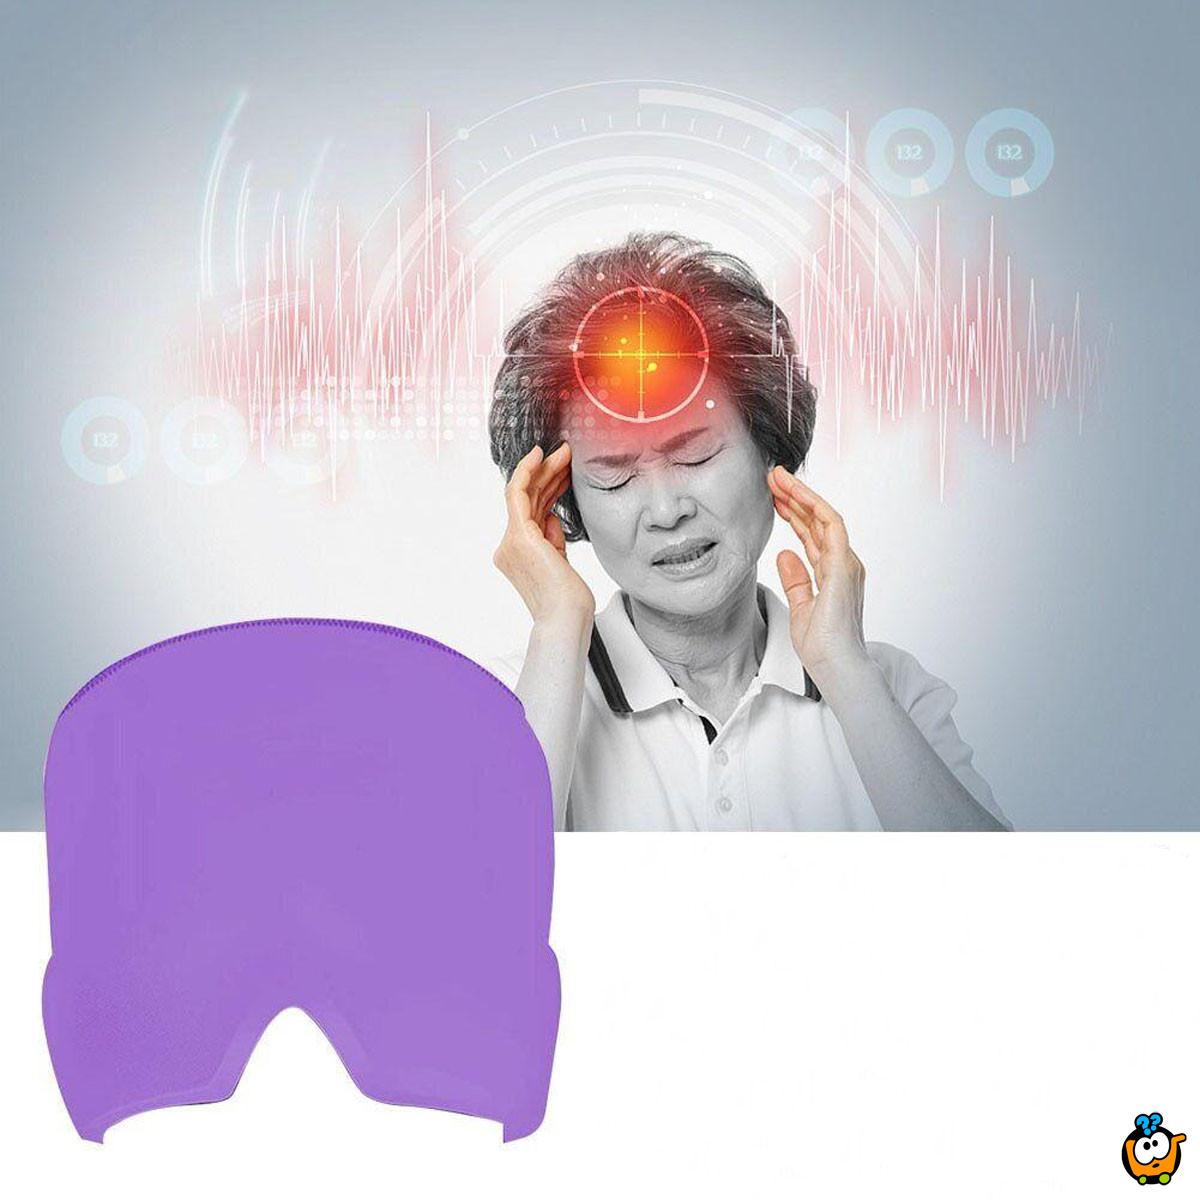 Migraine Mask - Hladna navlaka za glavu za ublažavanje glavobolje